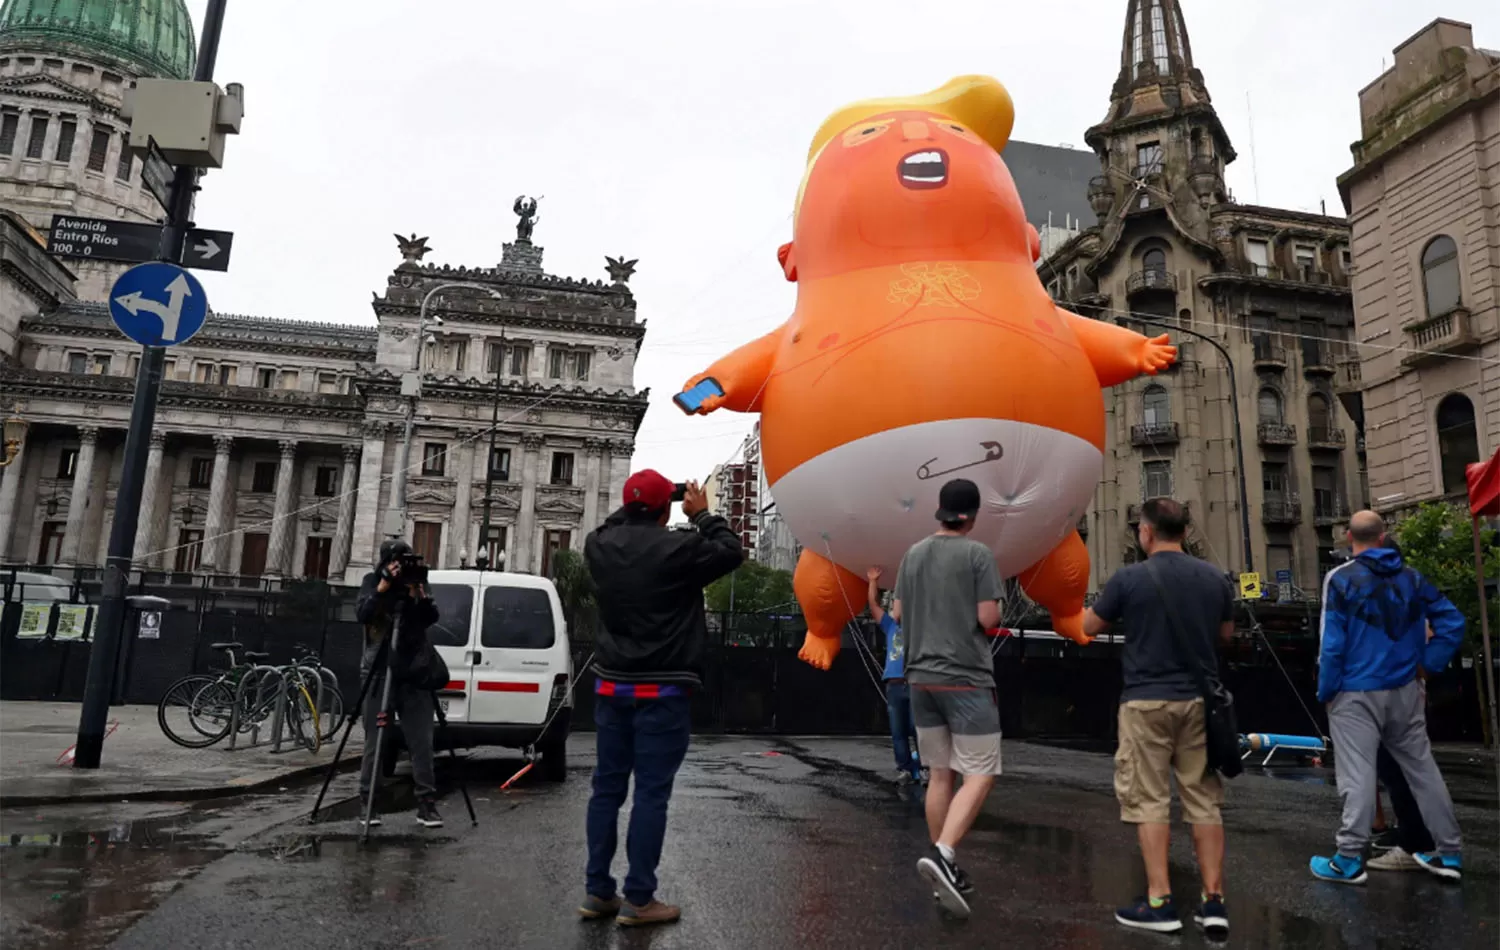 Reunión del G20 en Argentina: un Trump bebé en el Congreso inauguró las protestas contra la cumbre